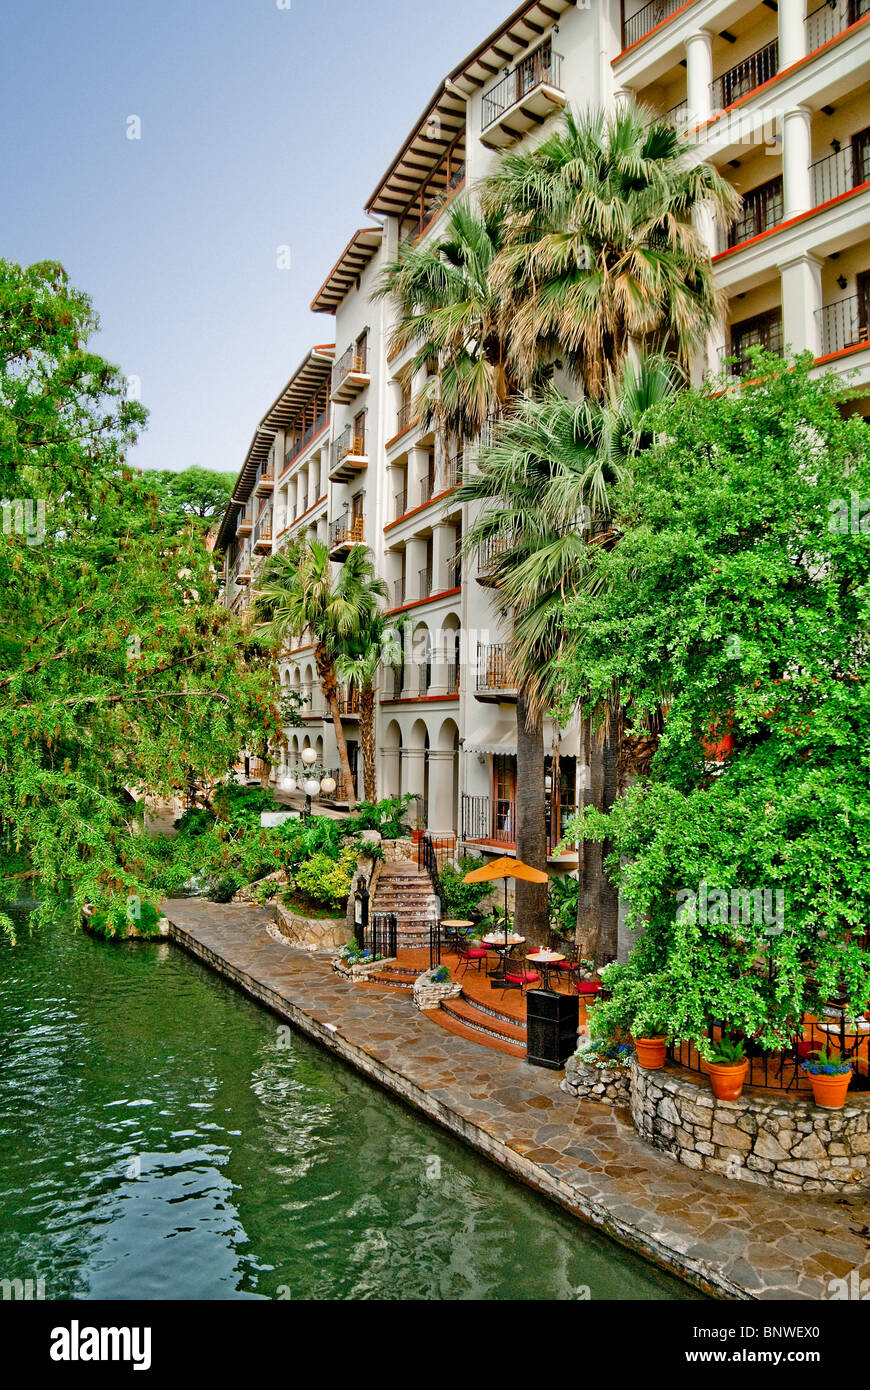 Historic La Mansion del Rio Hotel on River Walk on banks of the Paseo del Rio in downtown San Antonio, Texas, USA Stock Photo